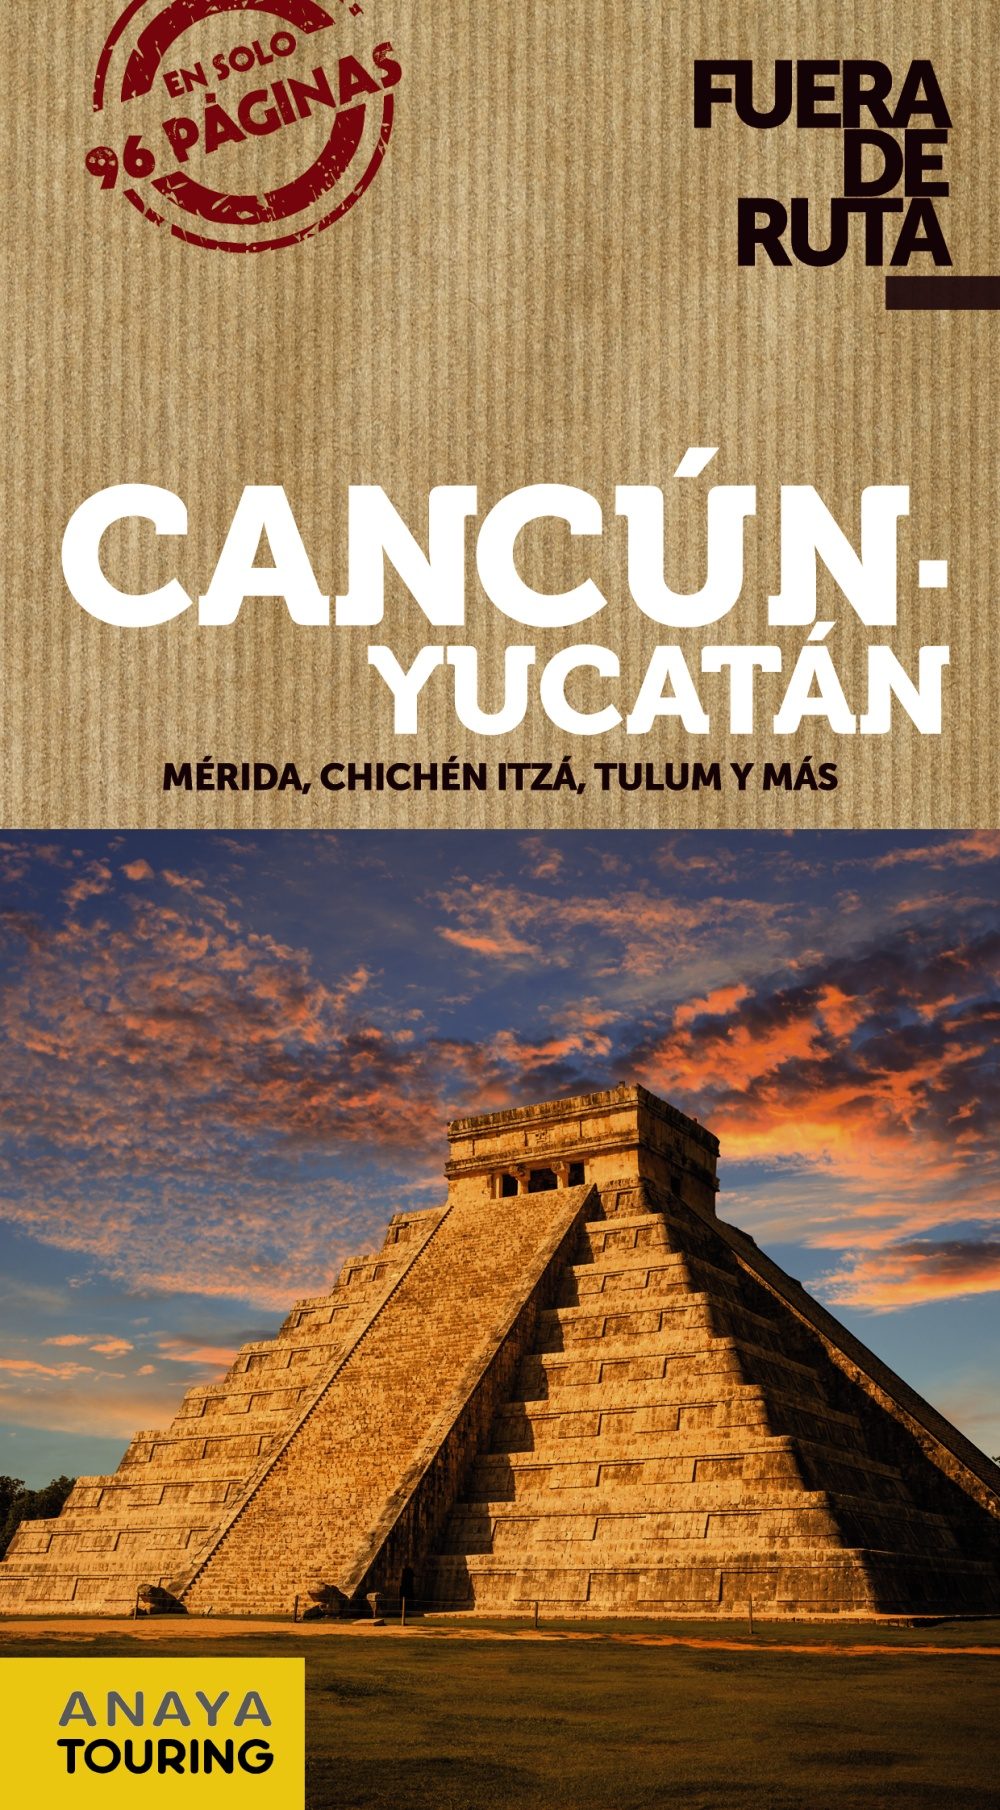 Cancún - Yucatán (Fuera de ruta). Mérida, Chichén Itza, Tulum y más